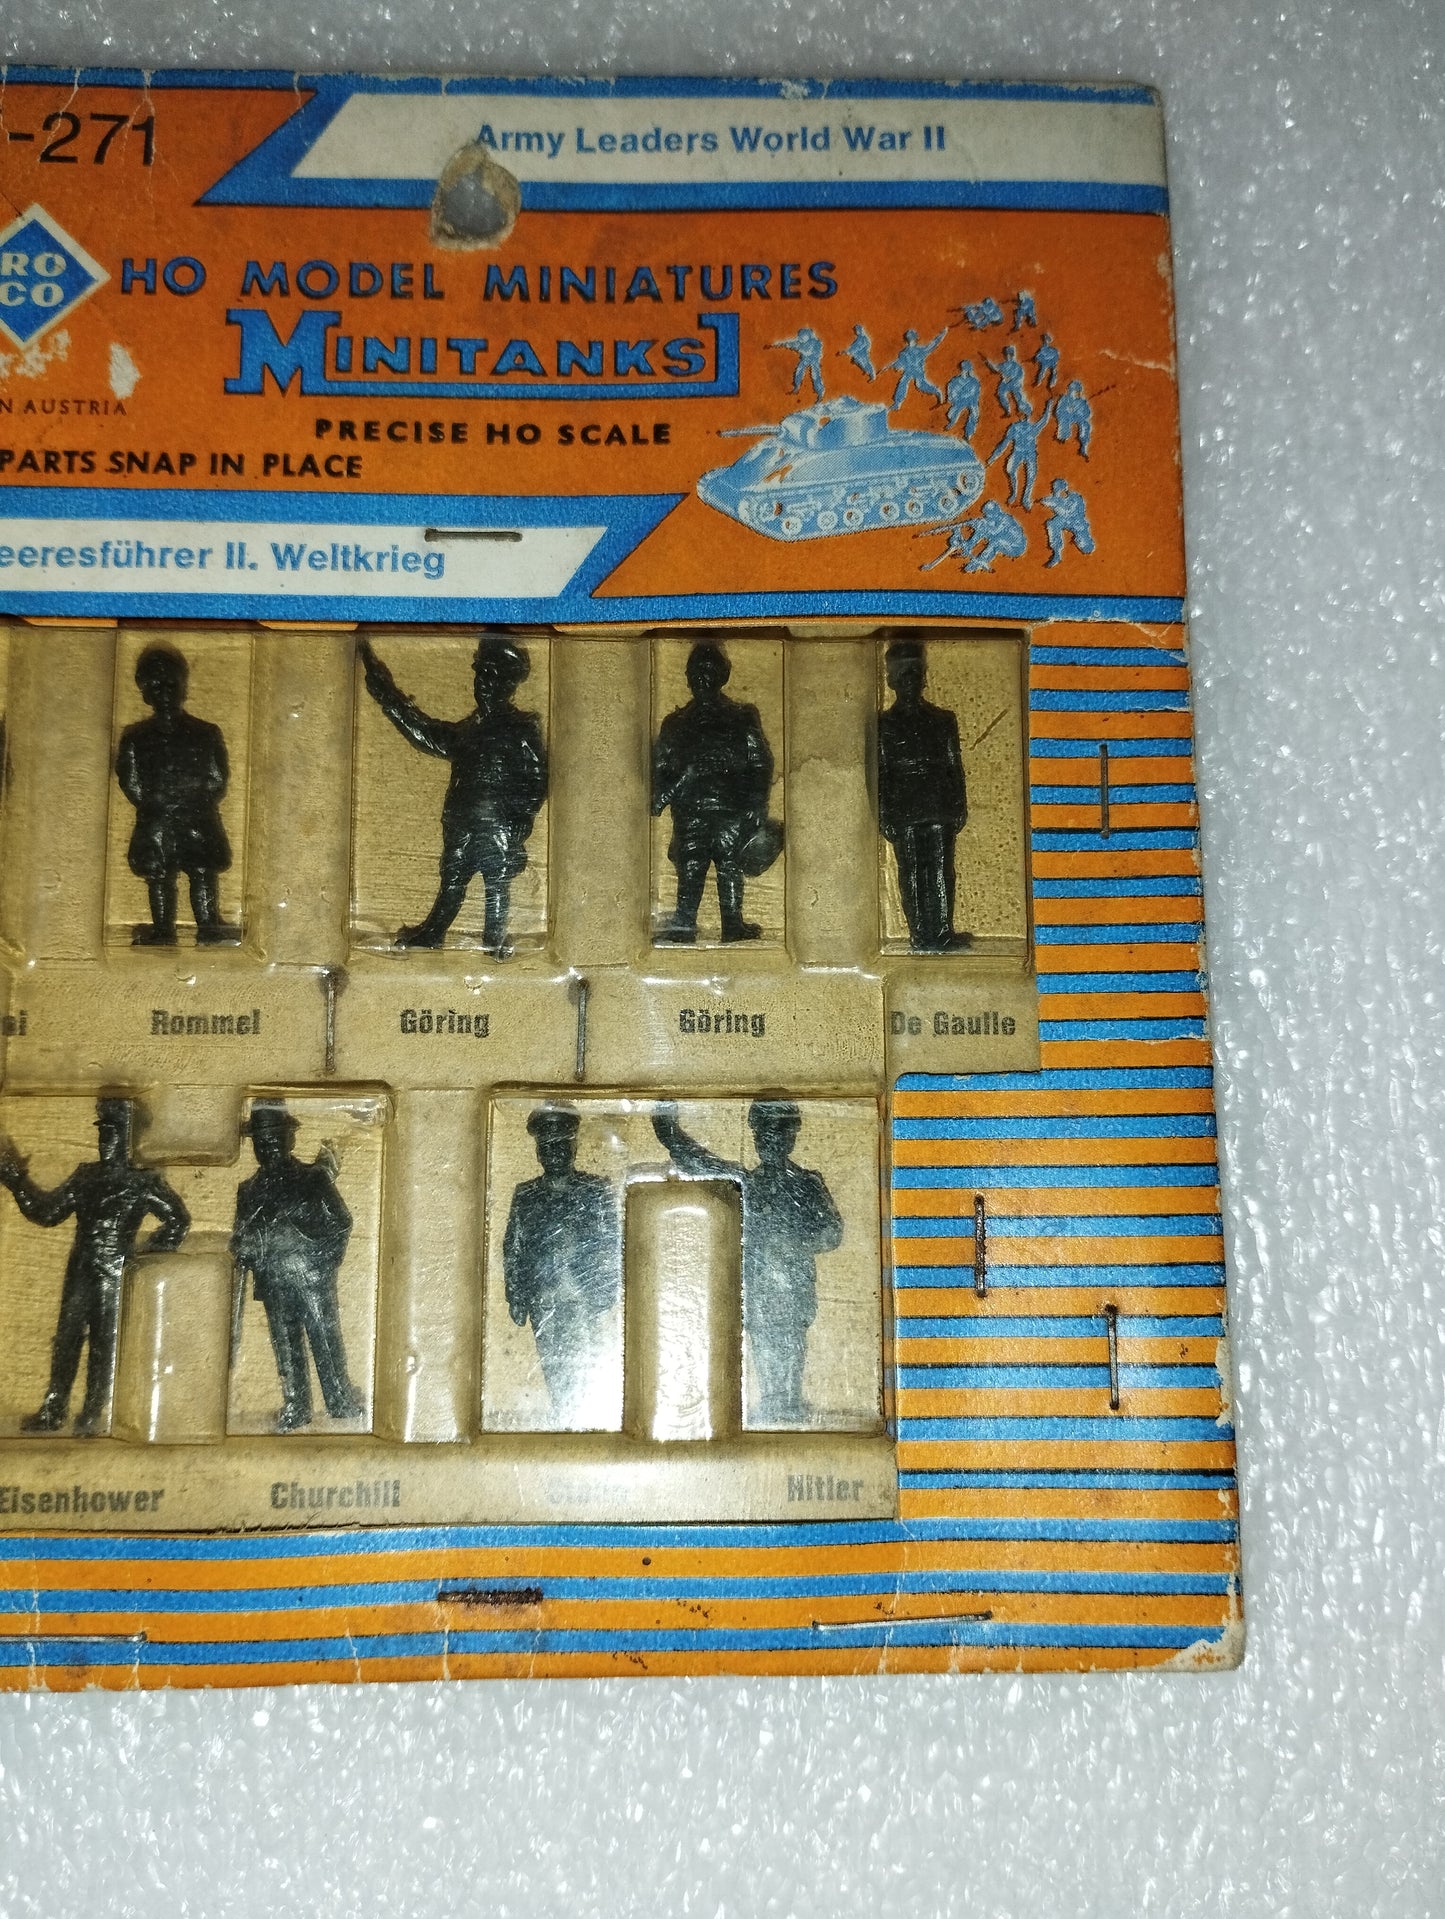 Model Miniatures Leaders Seconda Guerra mondiale

Prodotto da Roco cod.Z-271

Made in Austria